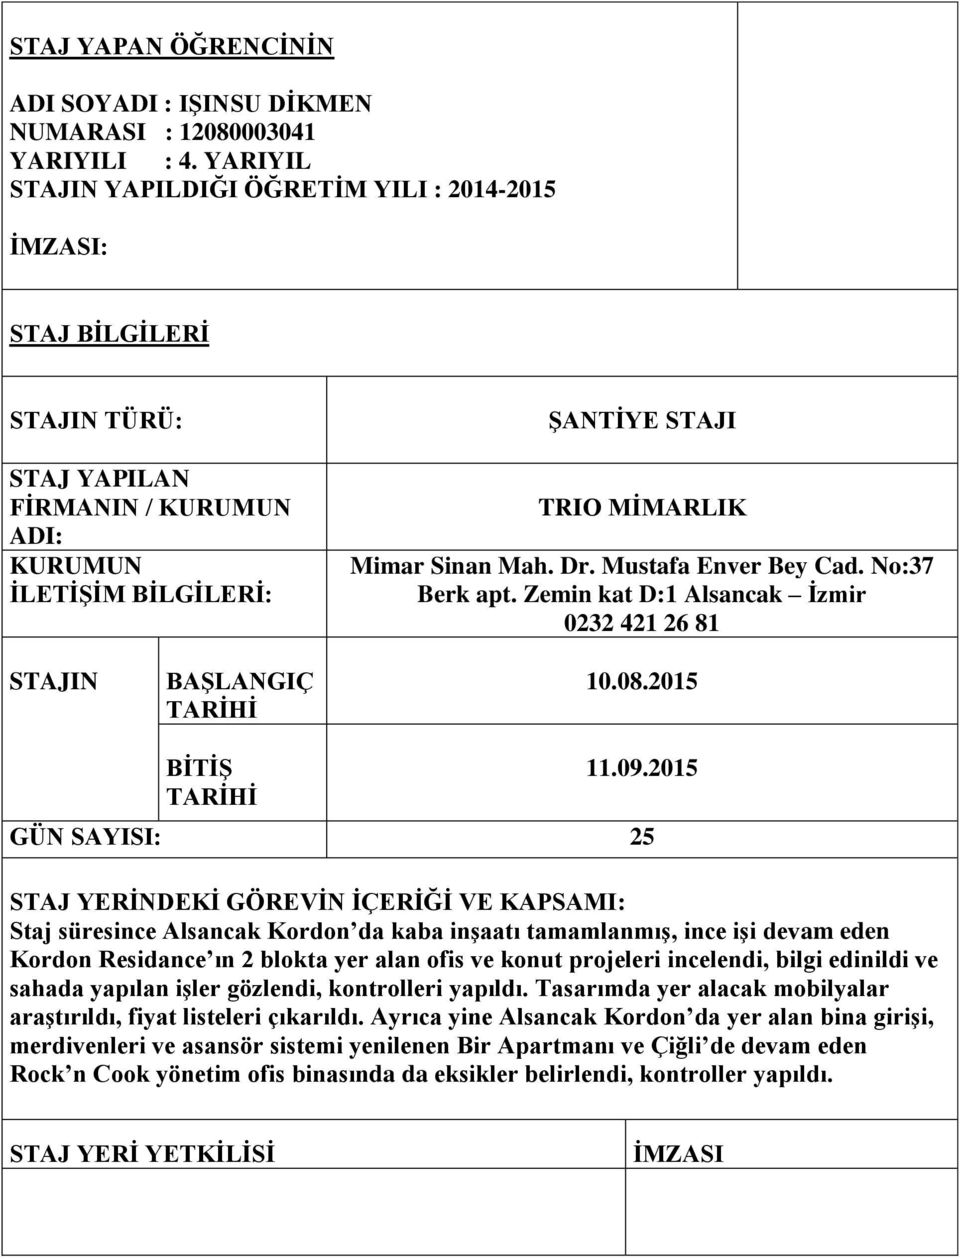 Mustafa Enver Bey Cad. No:37 Berk apt. Zemin kat D:1 Alsancak Ġzmir 0232 421 26 81 STAJIN BAġLANGIÇ TARĠHĠ 10.08.2015 BĠTĠġ TARĠHĠ 11.09.